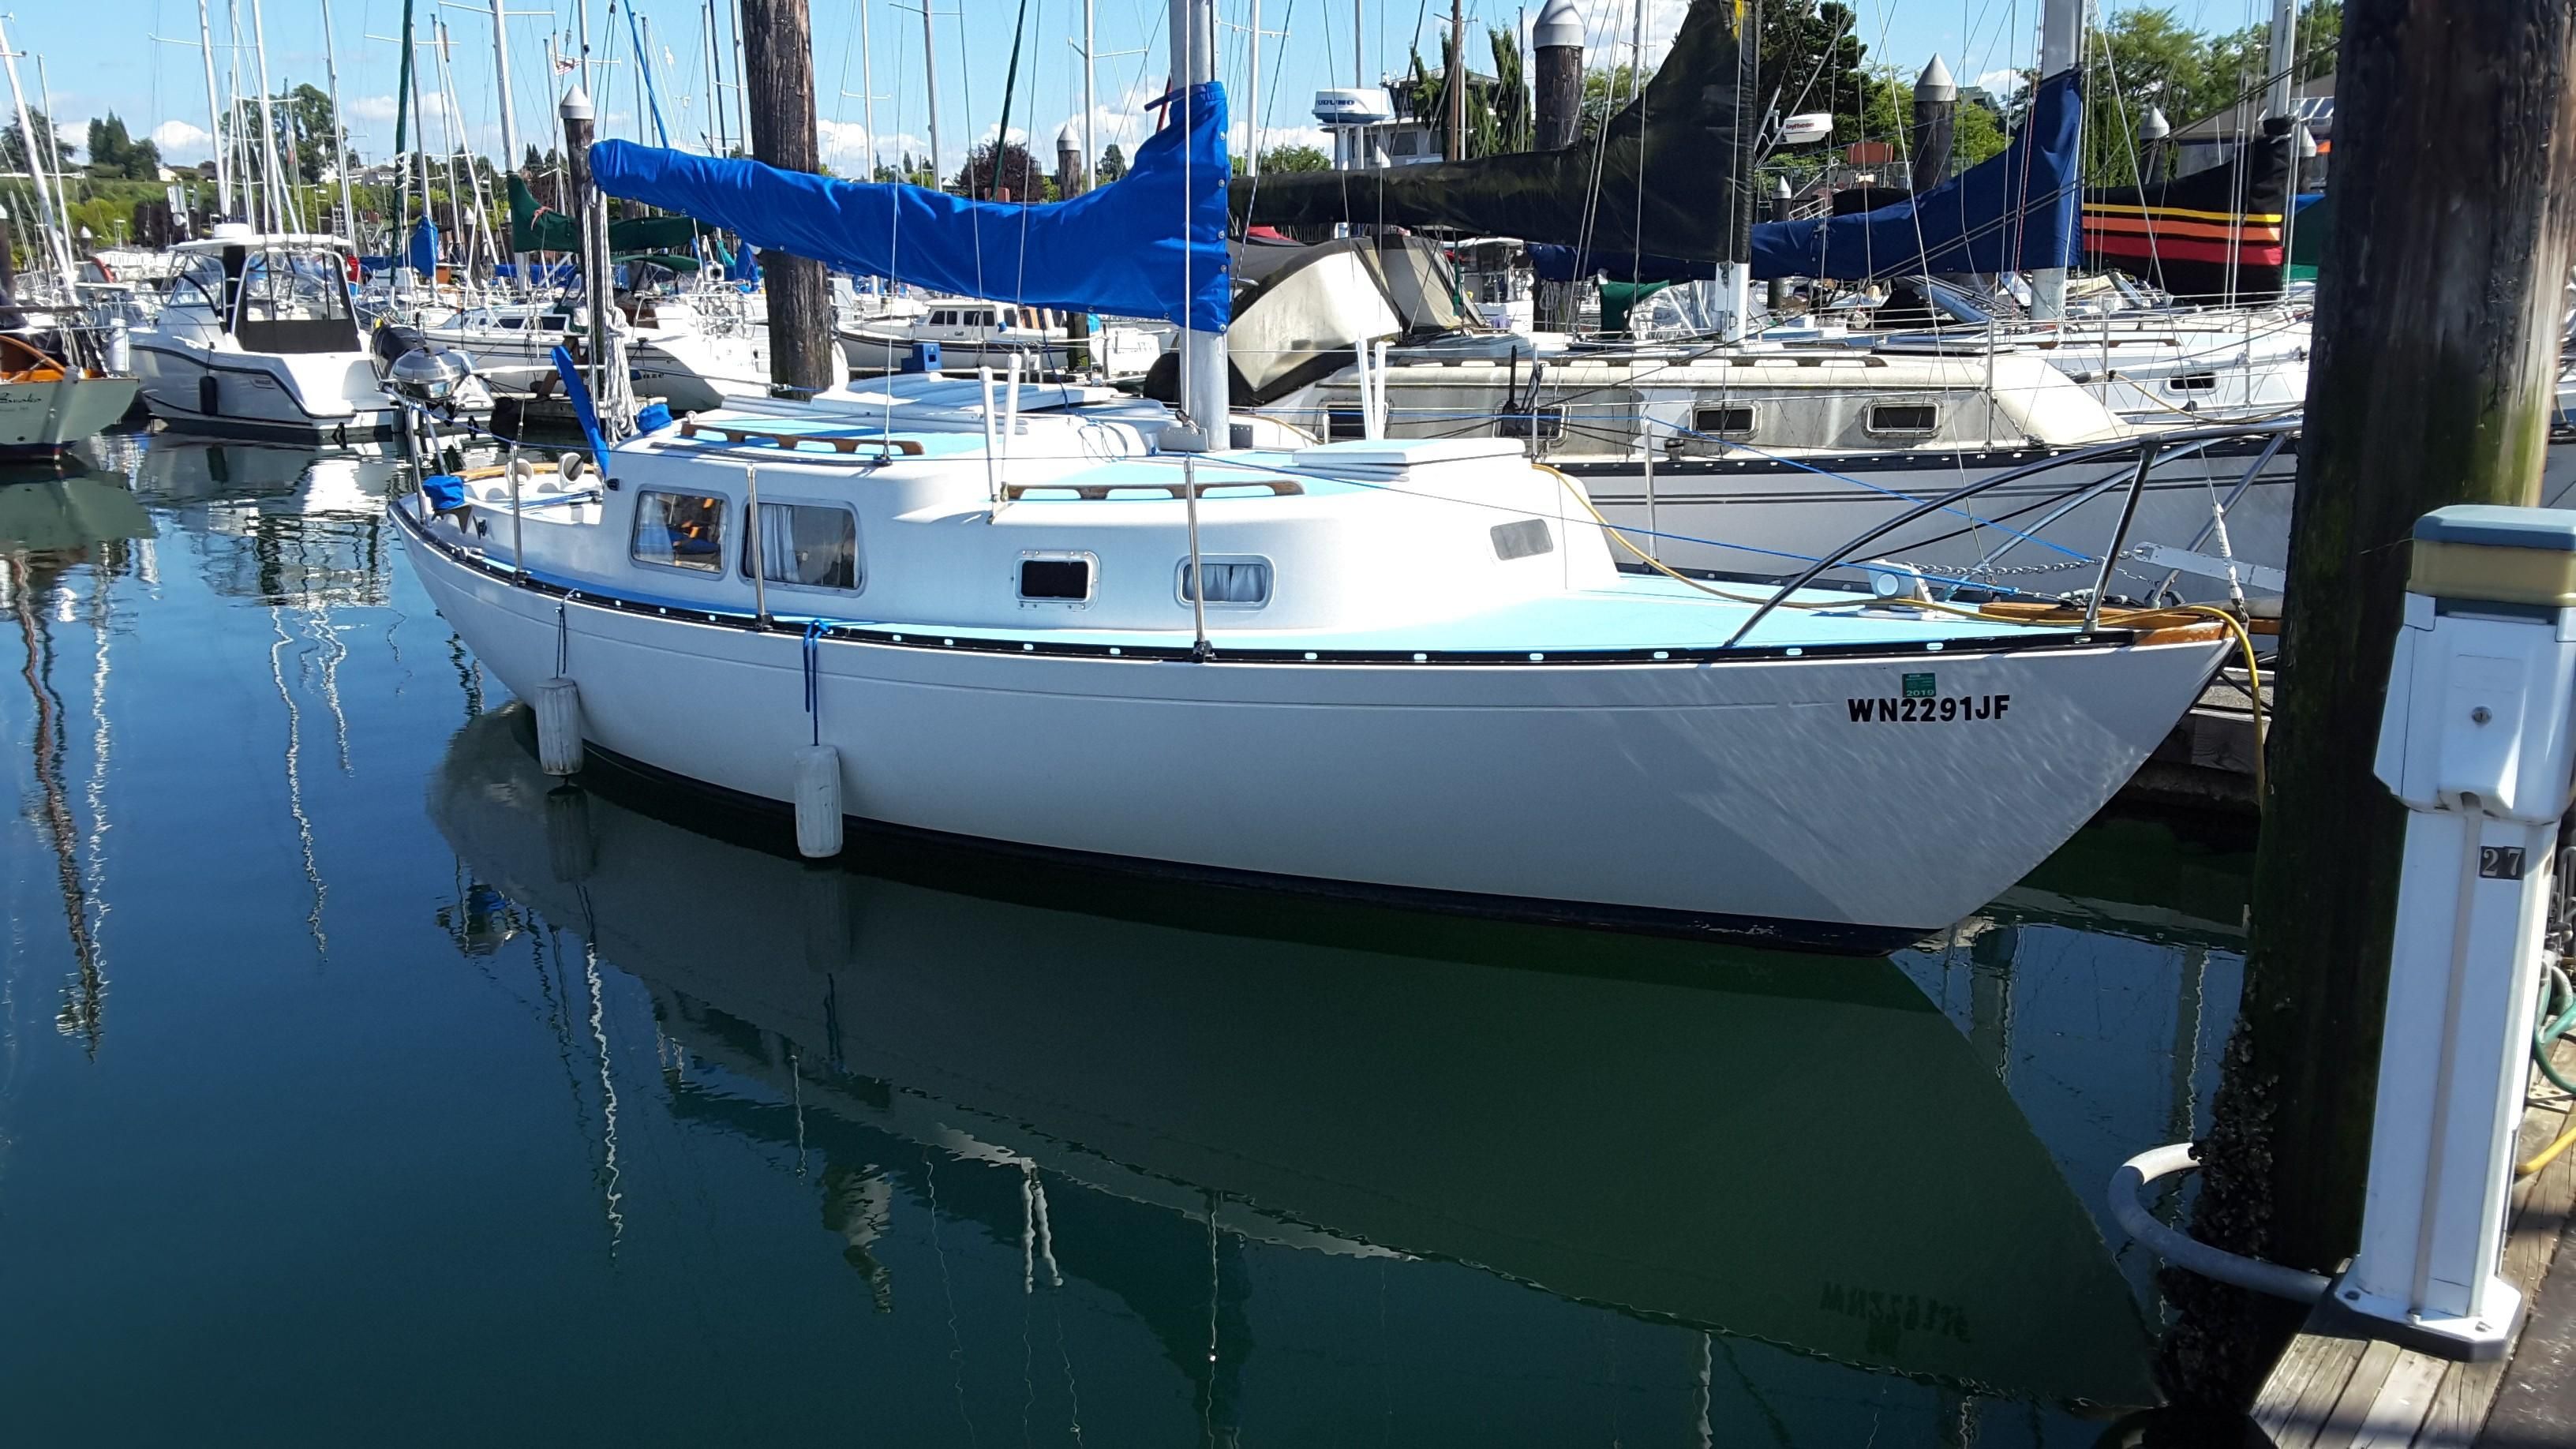 cal 30 sailboat review